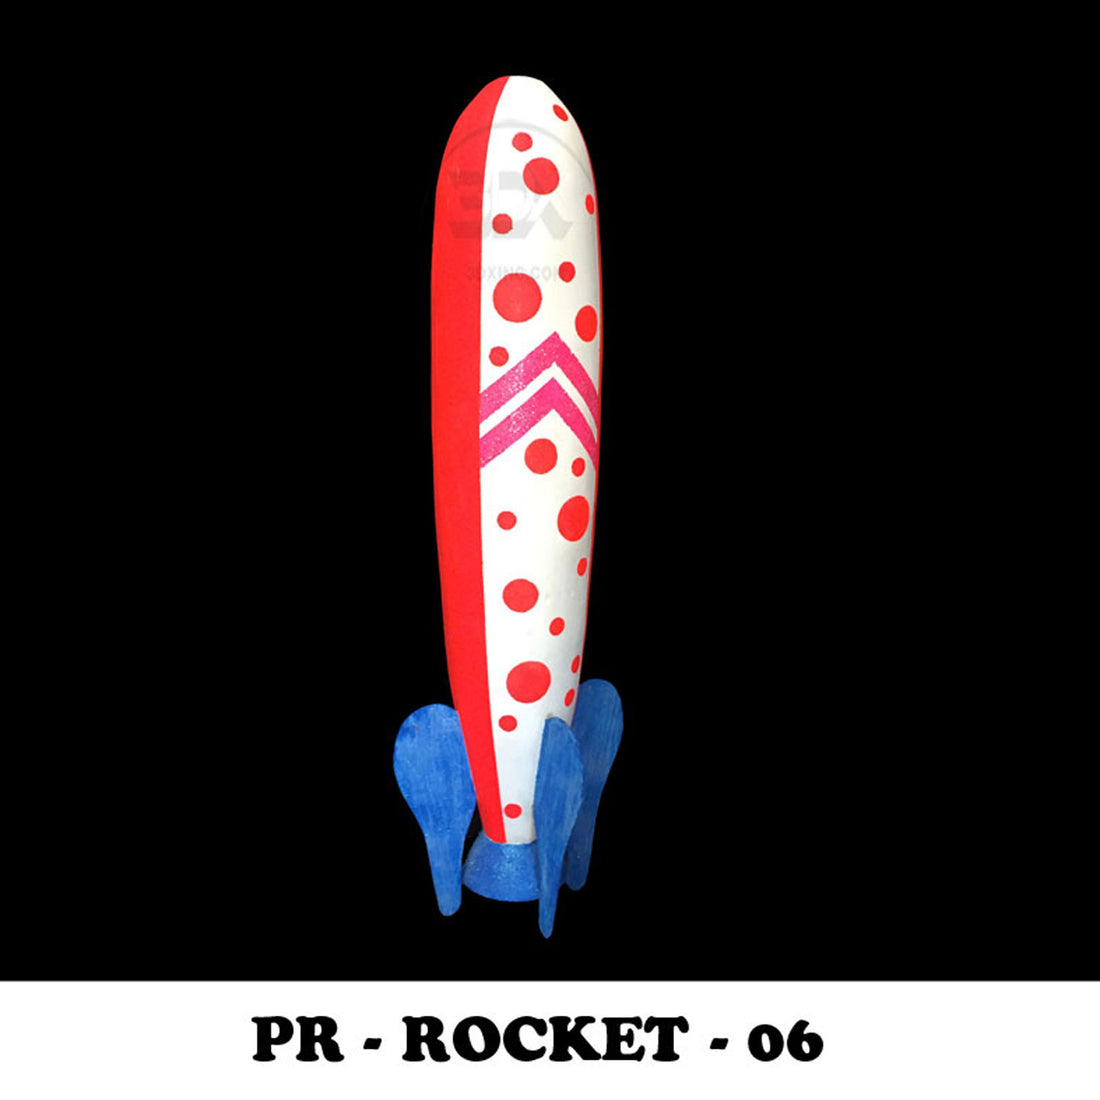 PR - ROCKET - 06